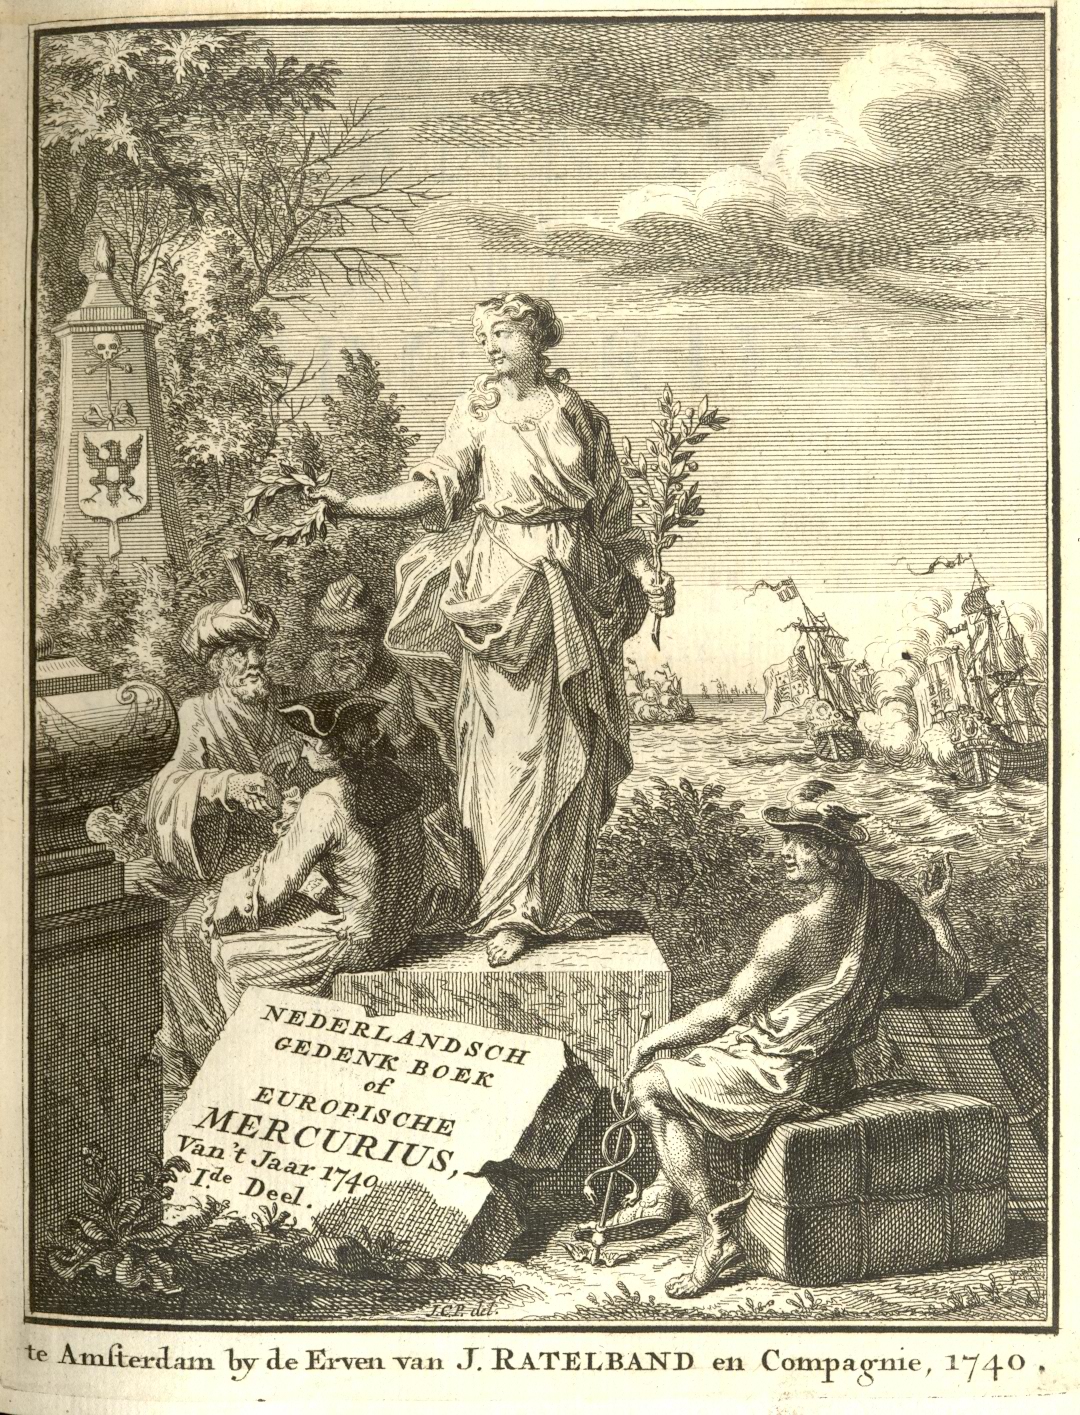 Europische Mercurius, 1740.